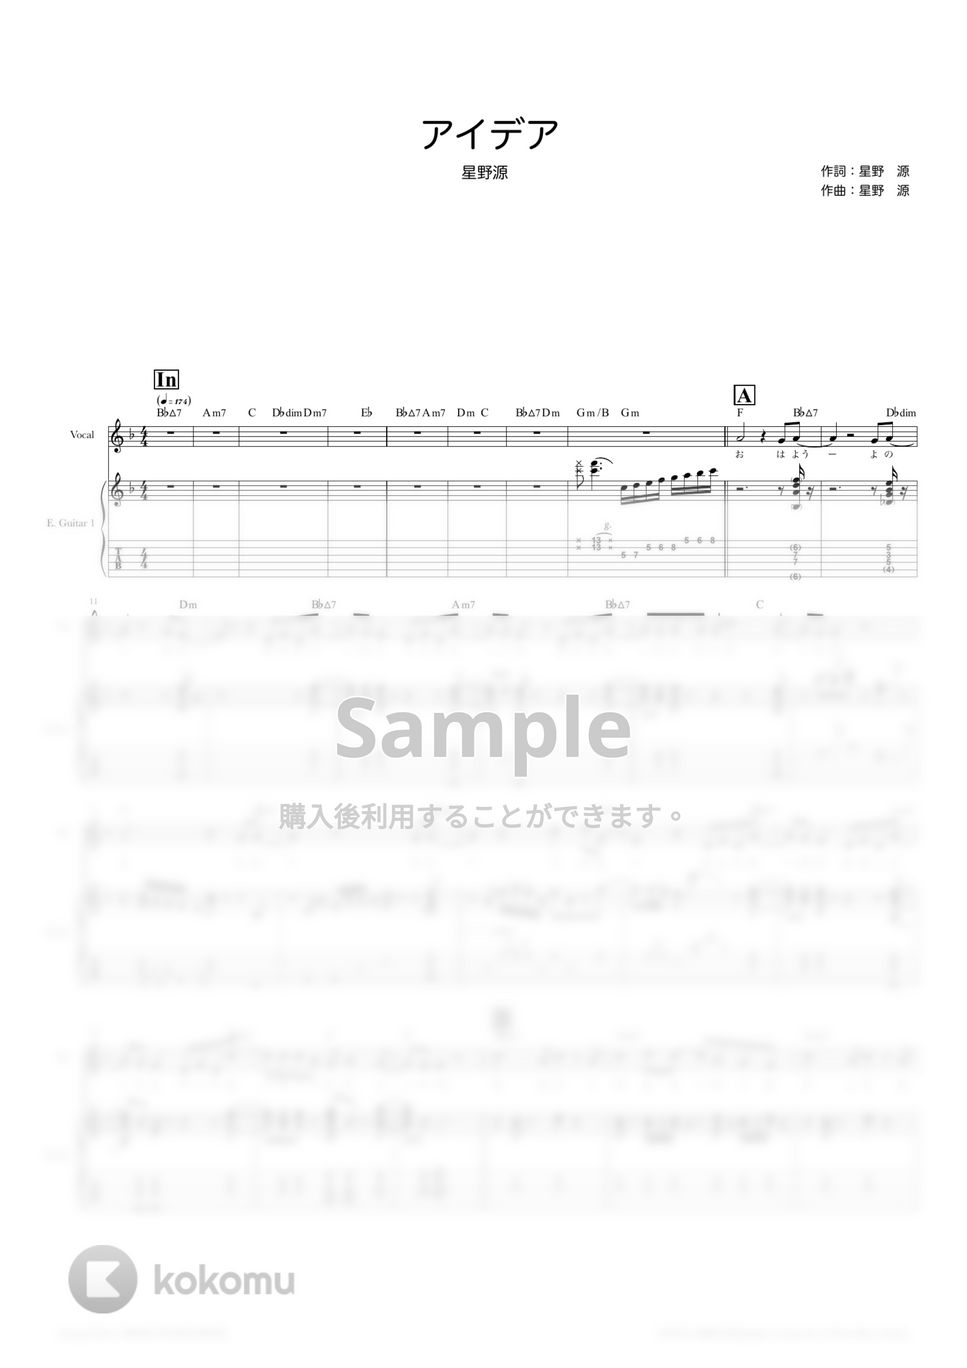 星野　源 - アイデア (ギタースコア・歌詞・コード付き) by TRIAD GUITAR SCHOOL